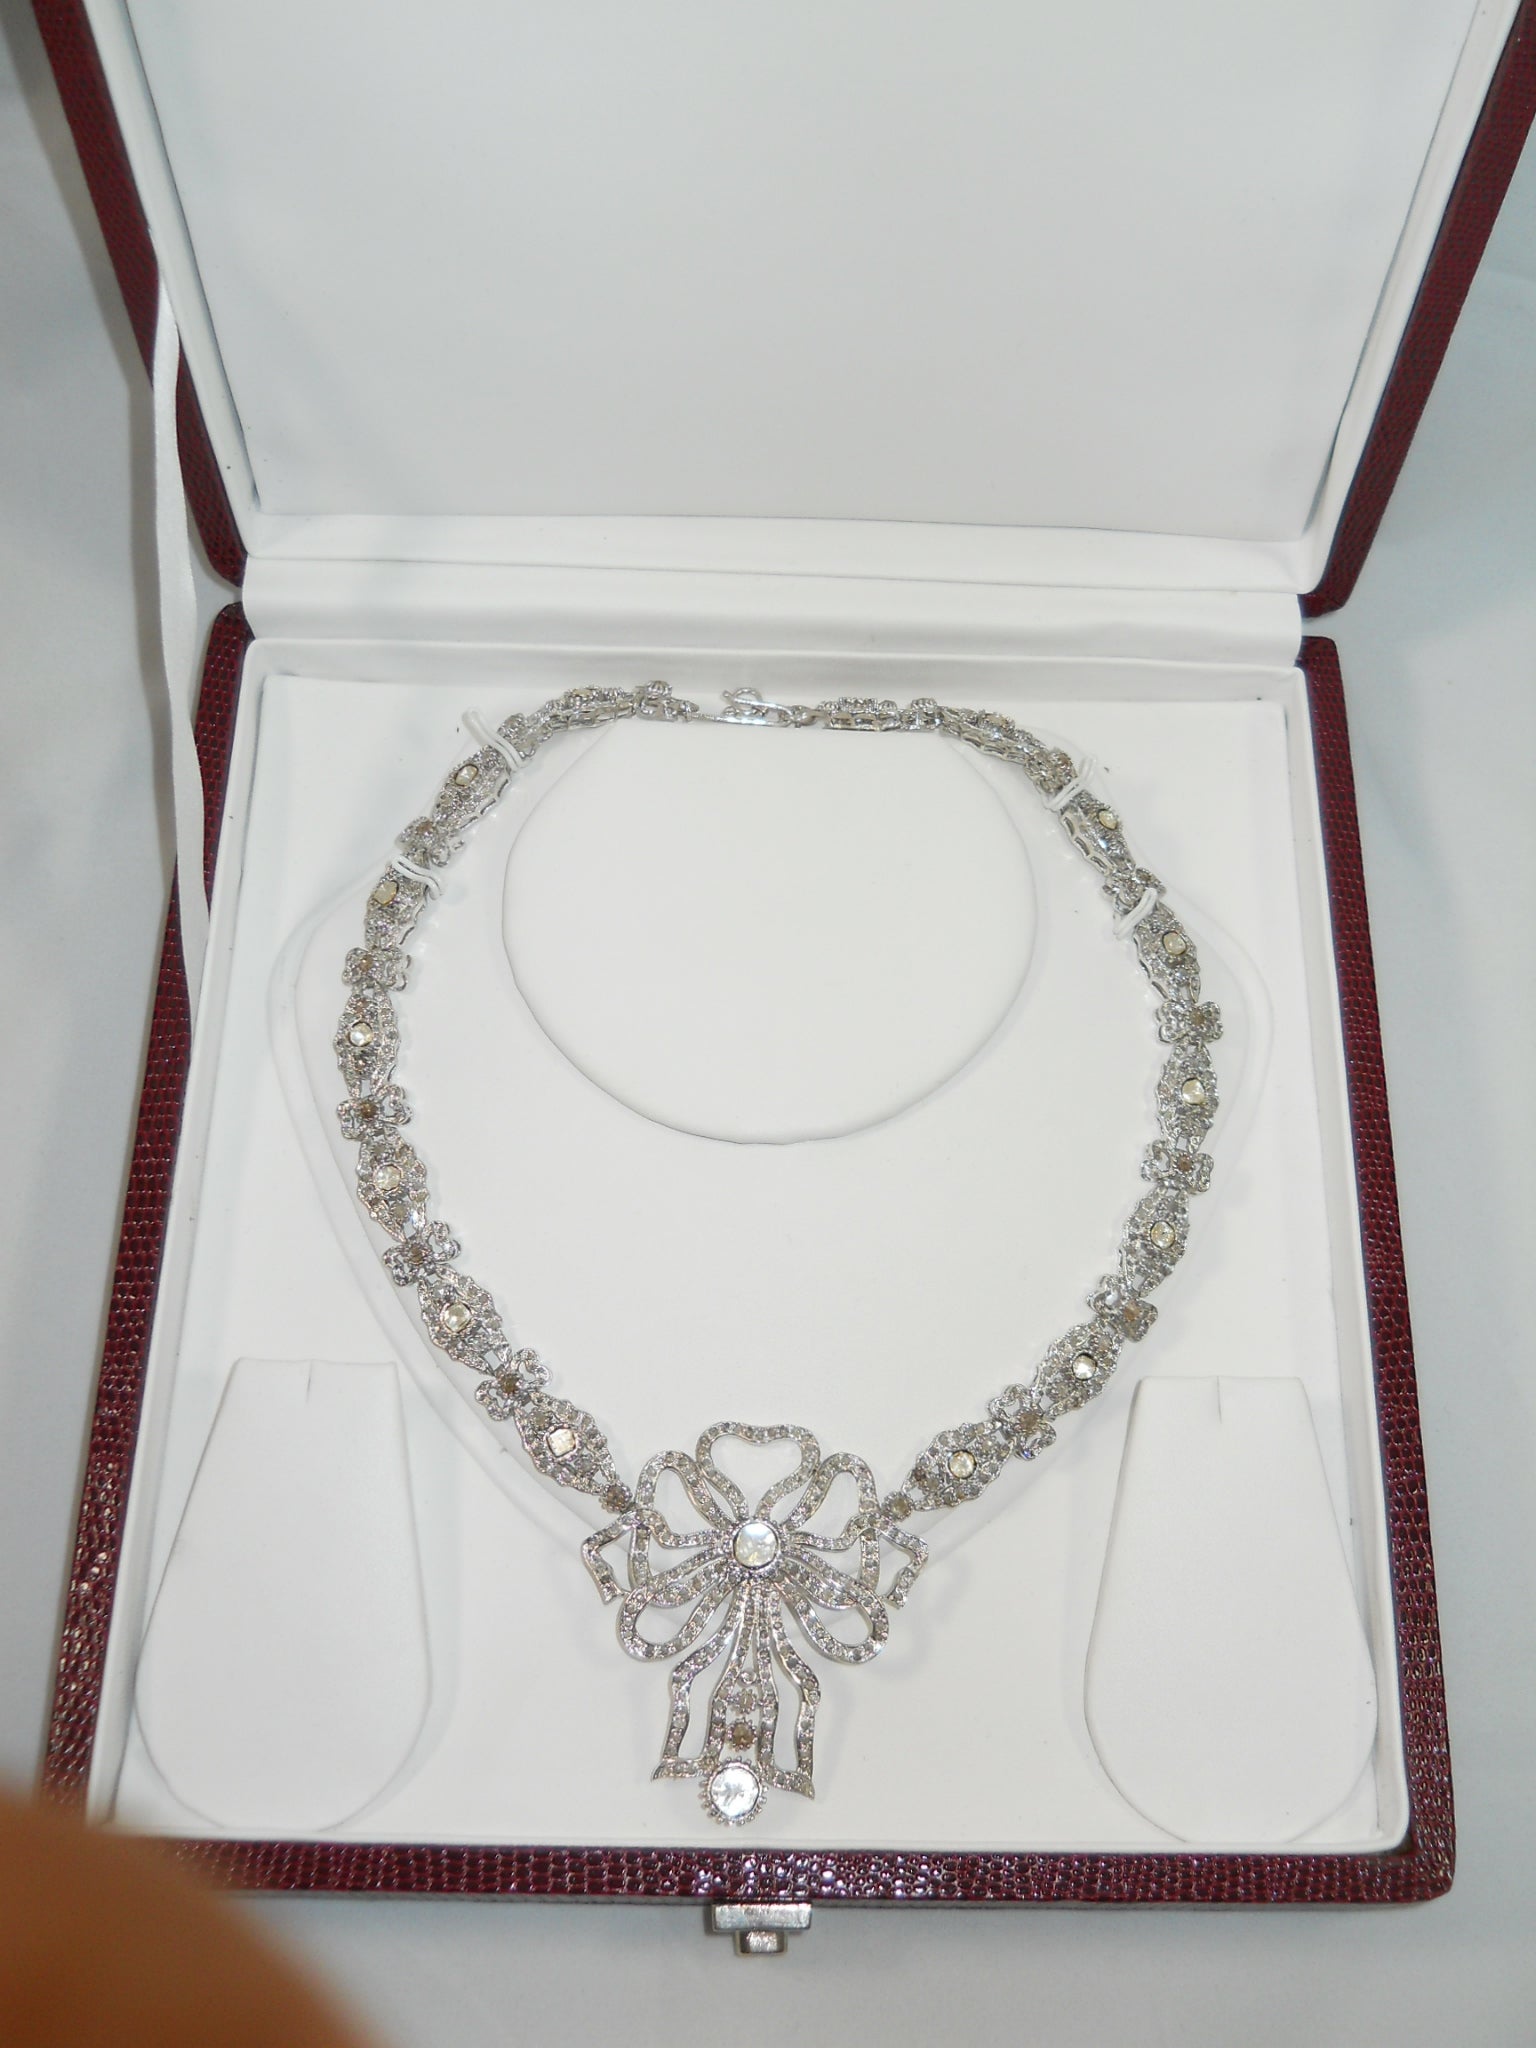 Dieses wunderschöne Silbercollier mit einer Schleife aus ungeschliffenen Diamanten im Rosenschliff ist in seiner Art einzigartig. Es wurde von den feinen Kunsthandwerkern mit natürlichen echten ungeschliffenen Diamanten und echten Diamanten im